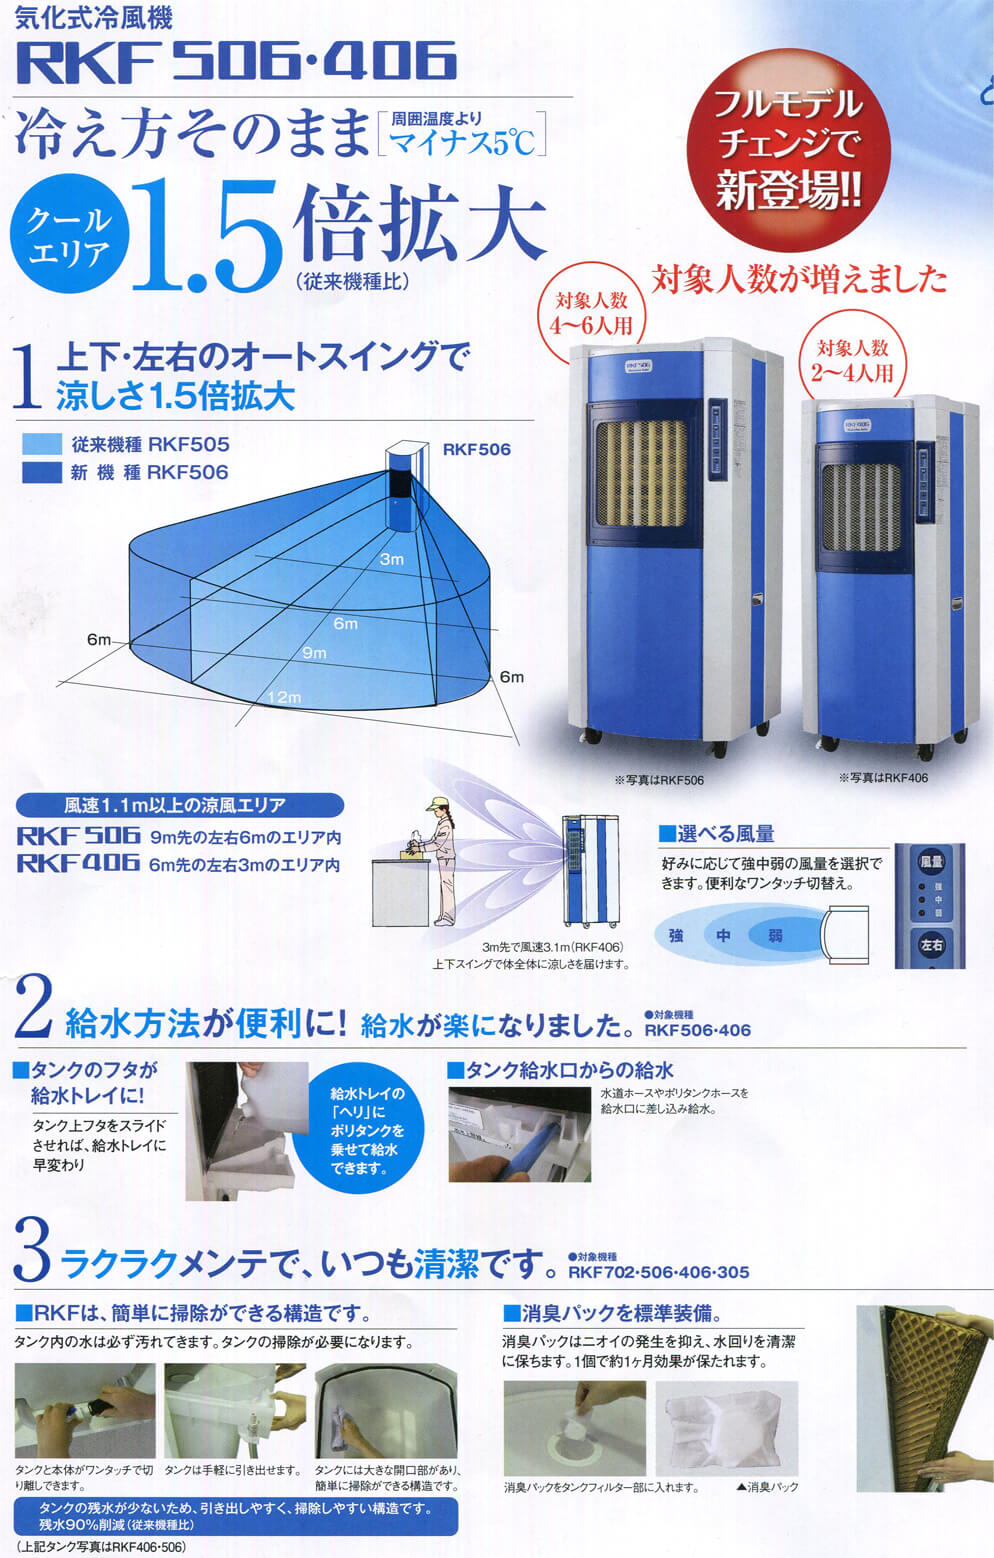 静岡製機 RKF406 気化式冷風機【数量限定特価】 ウエダ金物【公式サイト】